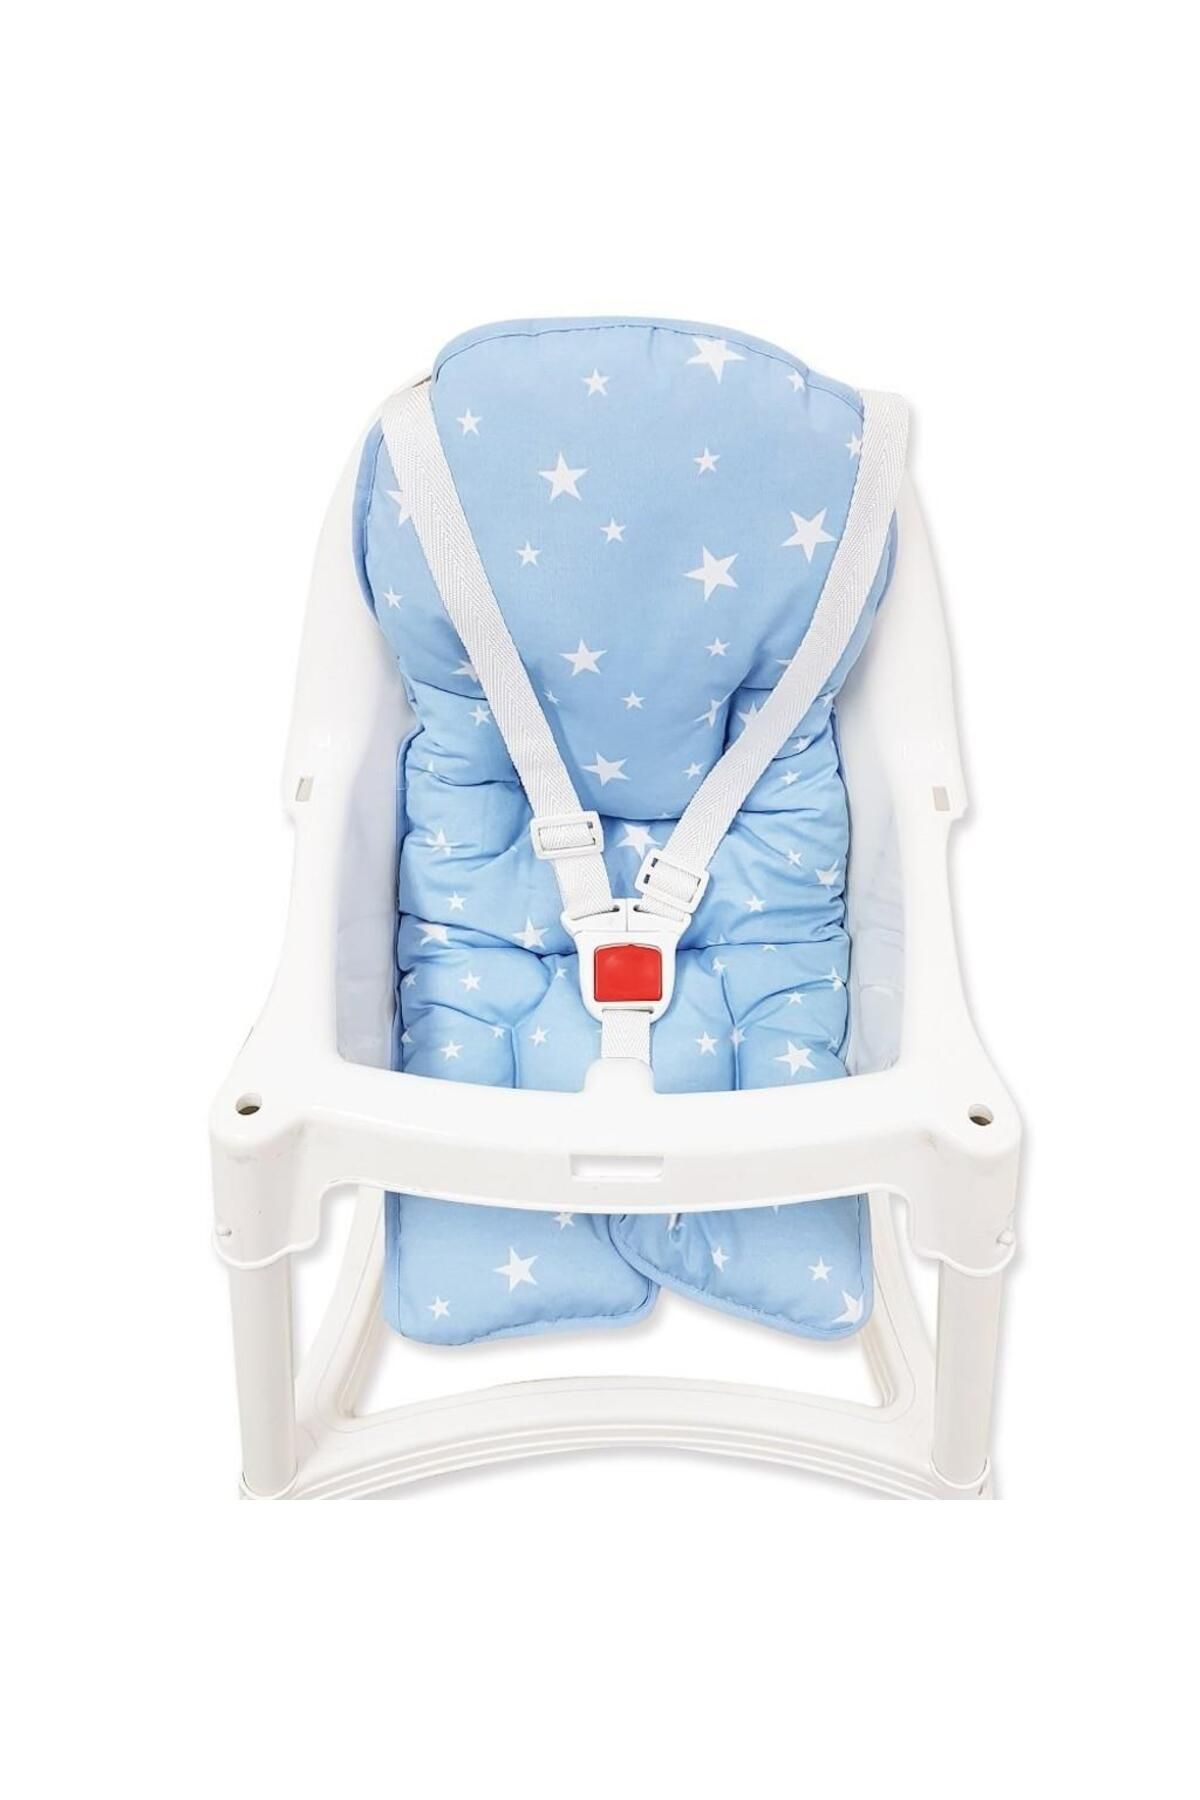 Sevi Bebe Mama Sandalyesi Minderi Art-150 Mavi Yıldız